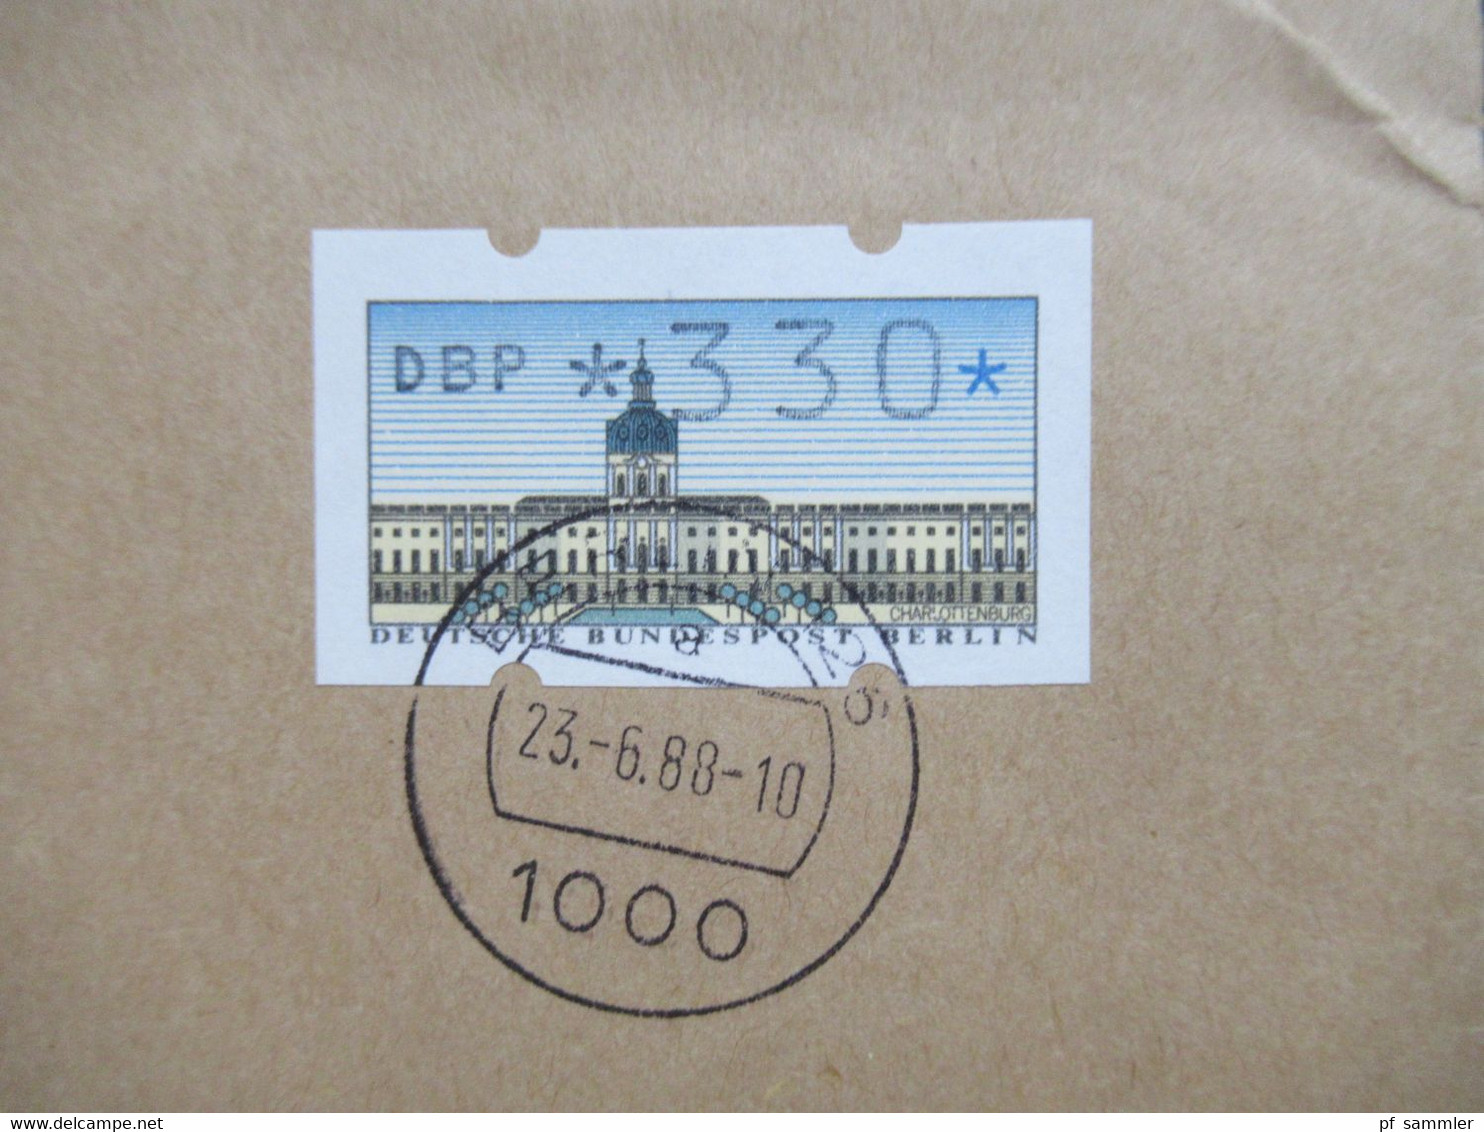 Berlin 1988 ATM Nr. Mit Wert 330 EF Fernbrief Nach Saarbrücken Einschreiben 1000 Berlin 126 - Lettres & Documents